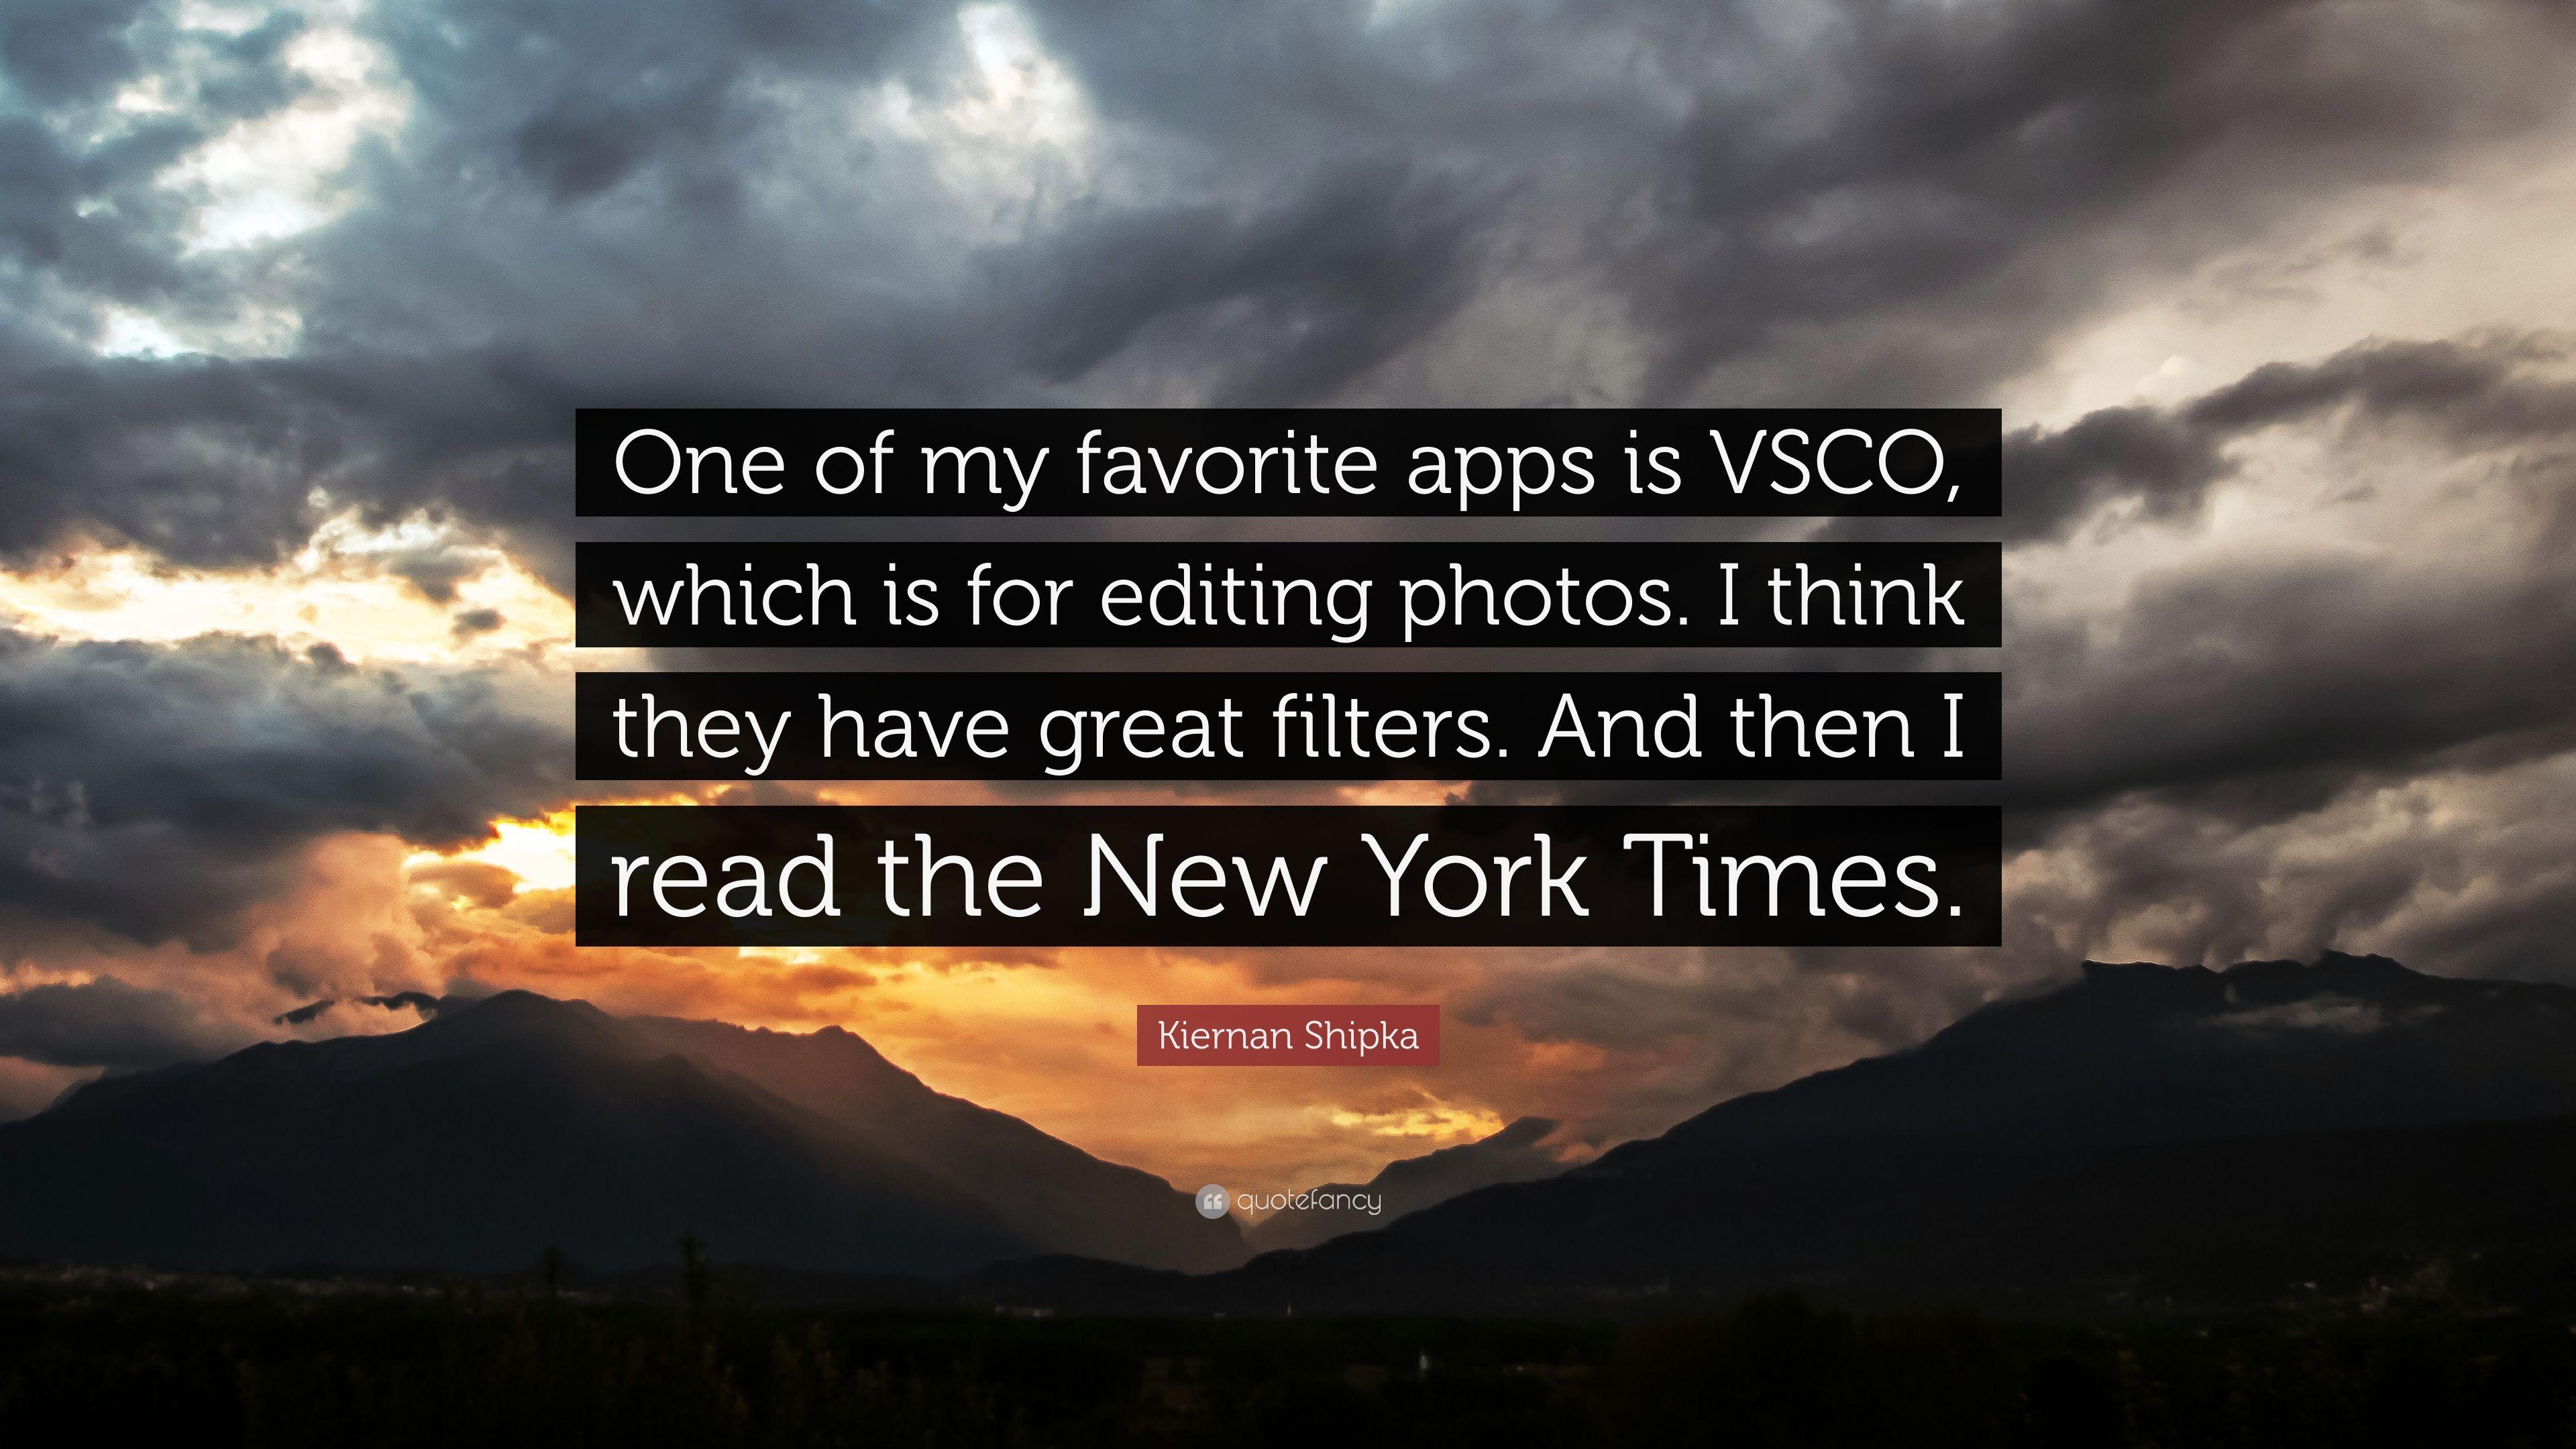 Kiernan Shipka Quote: “One of my favorite apps is VSCO